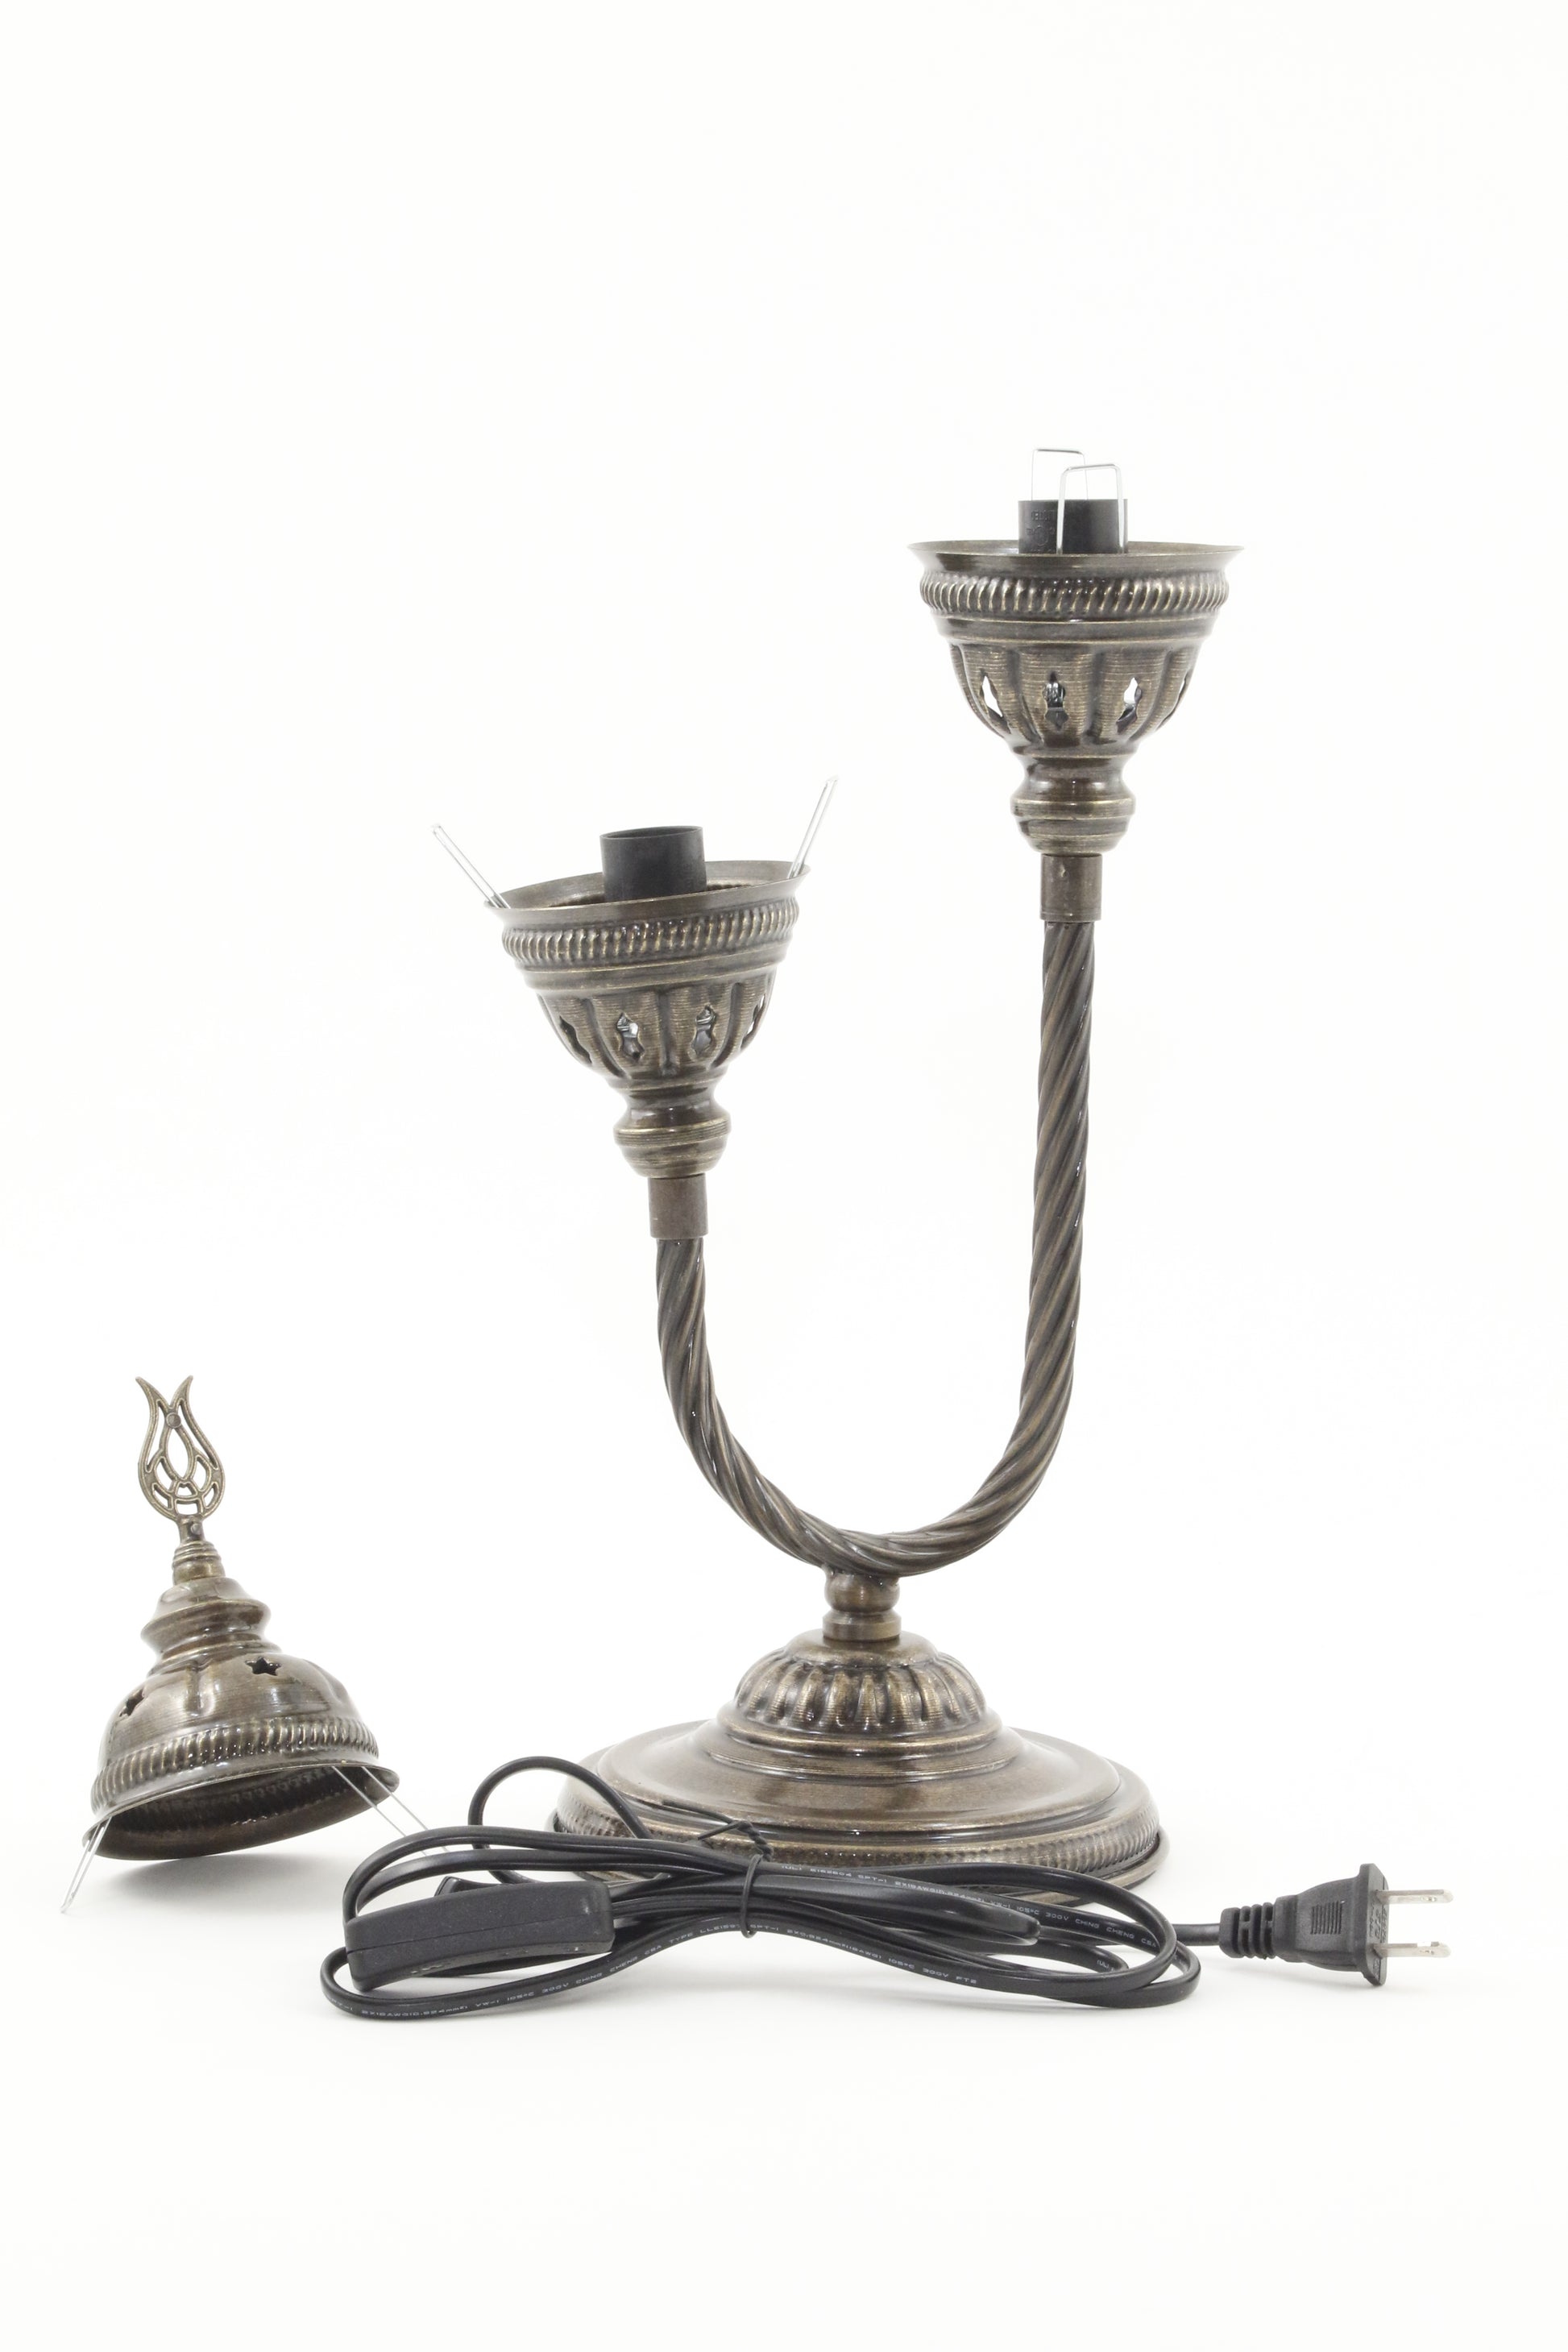 DOUBLE HORSESHOE EGG SHAPED TURKISH MOSAIC TABLE LAMP BODY